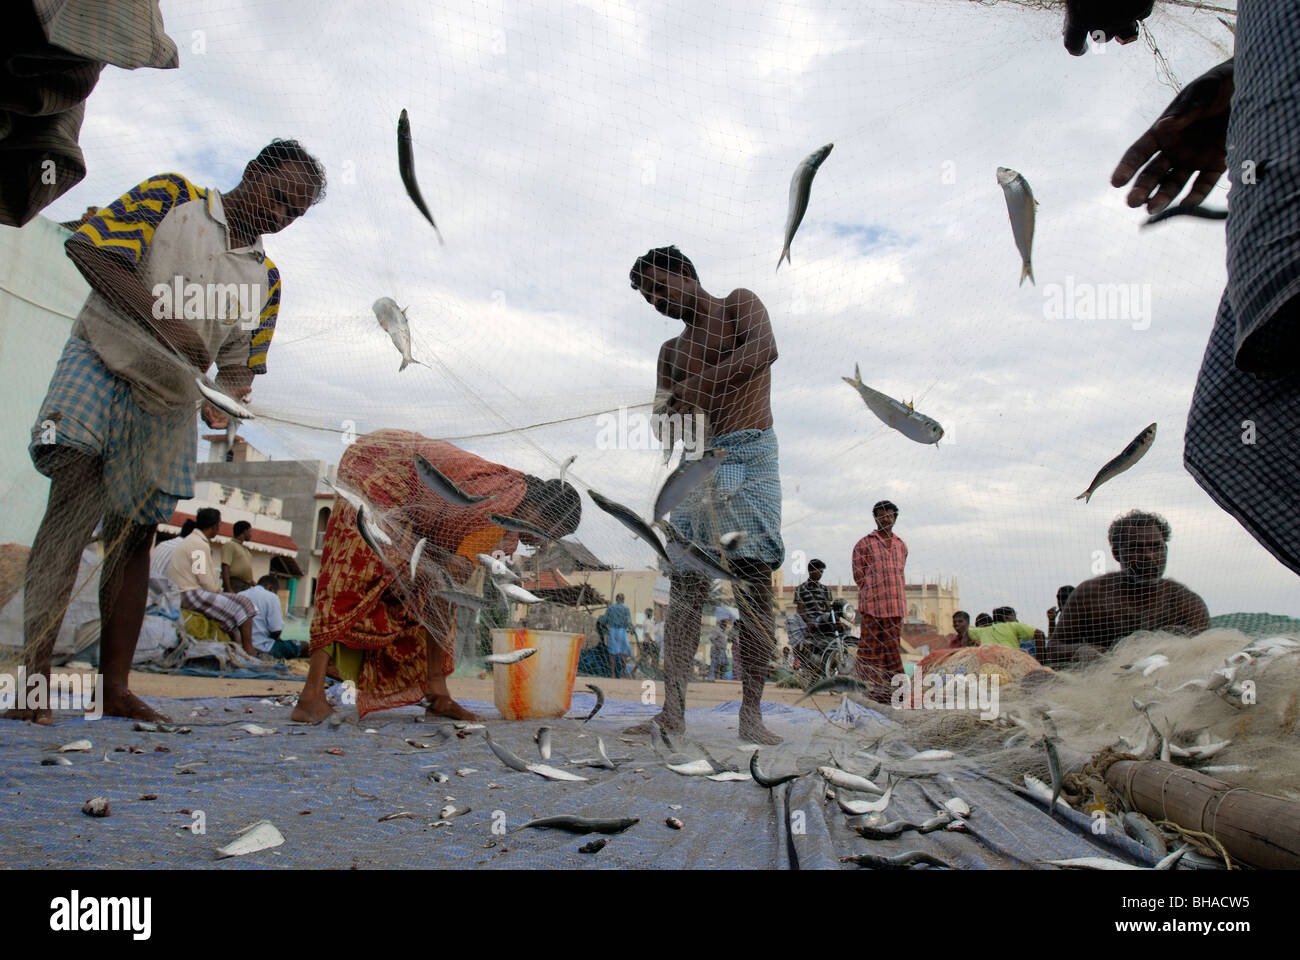 Fishermen collecting fish from the fishing net in Kanyakumari